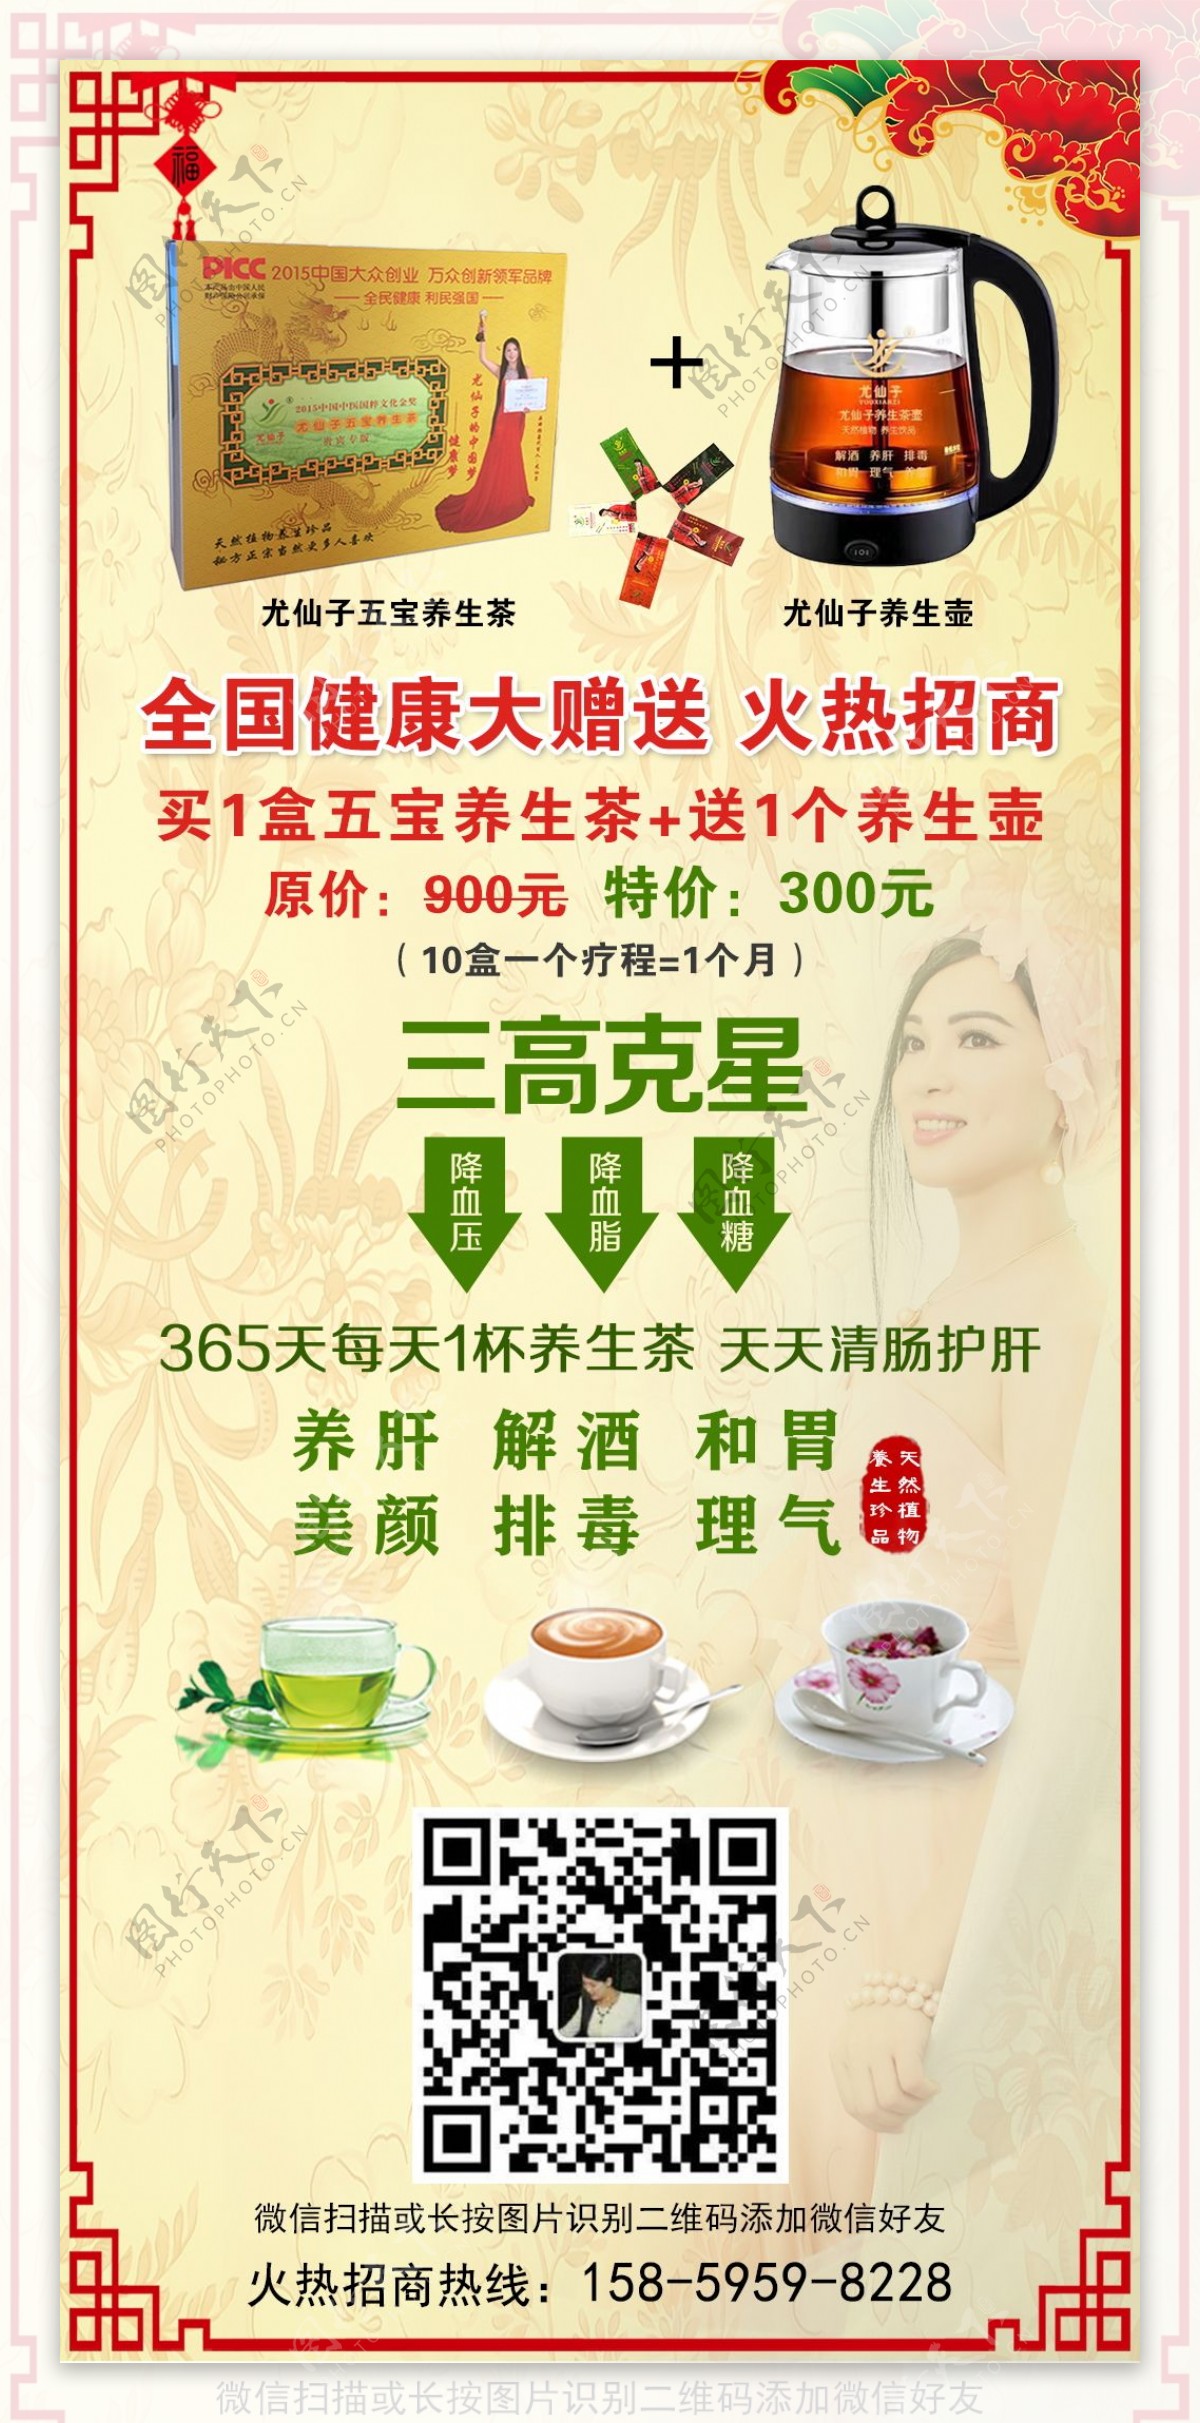 尤仙子五宝养生茶养生壶健康宣传海报设计